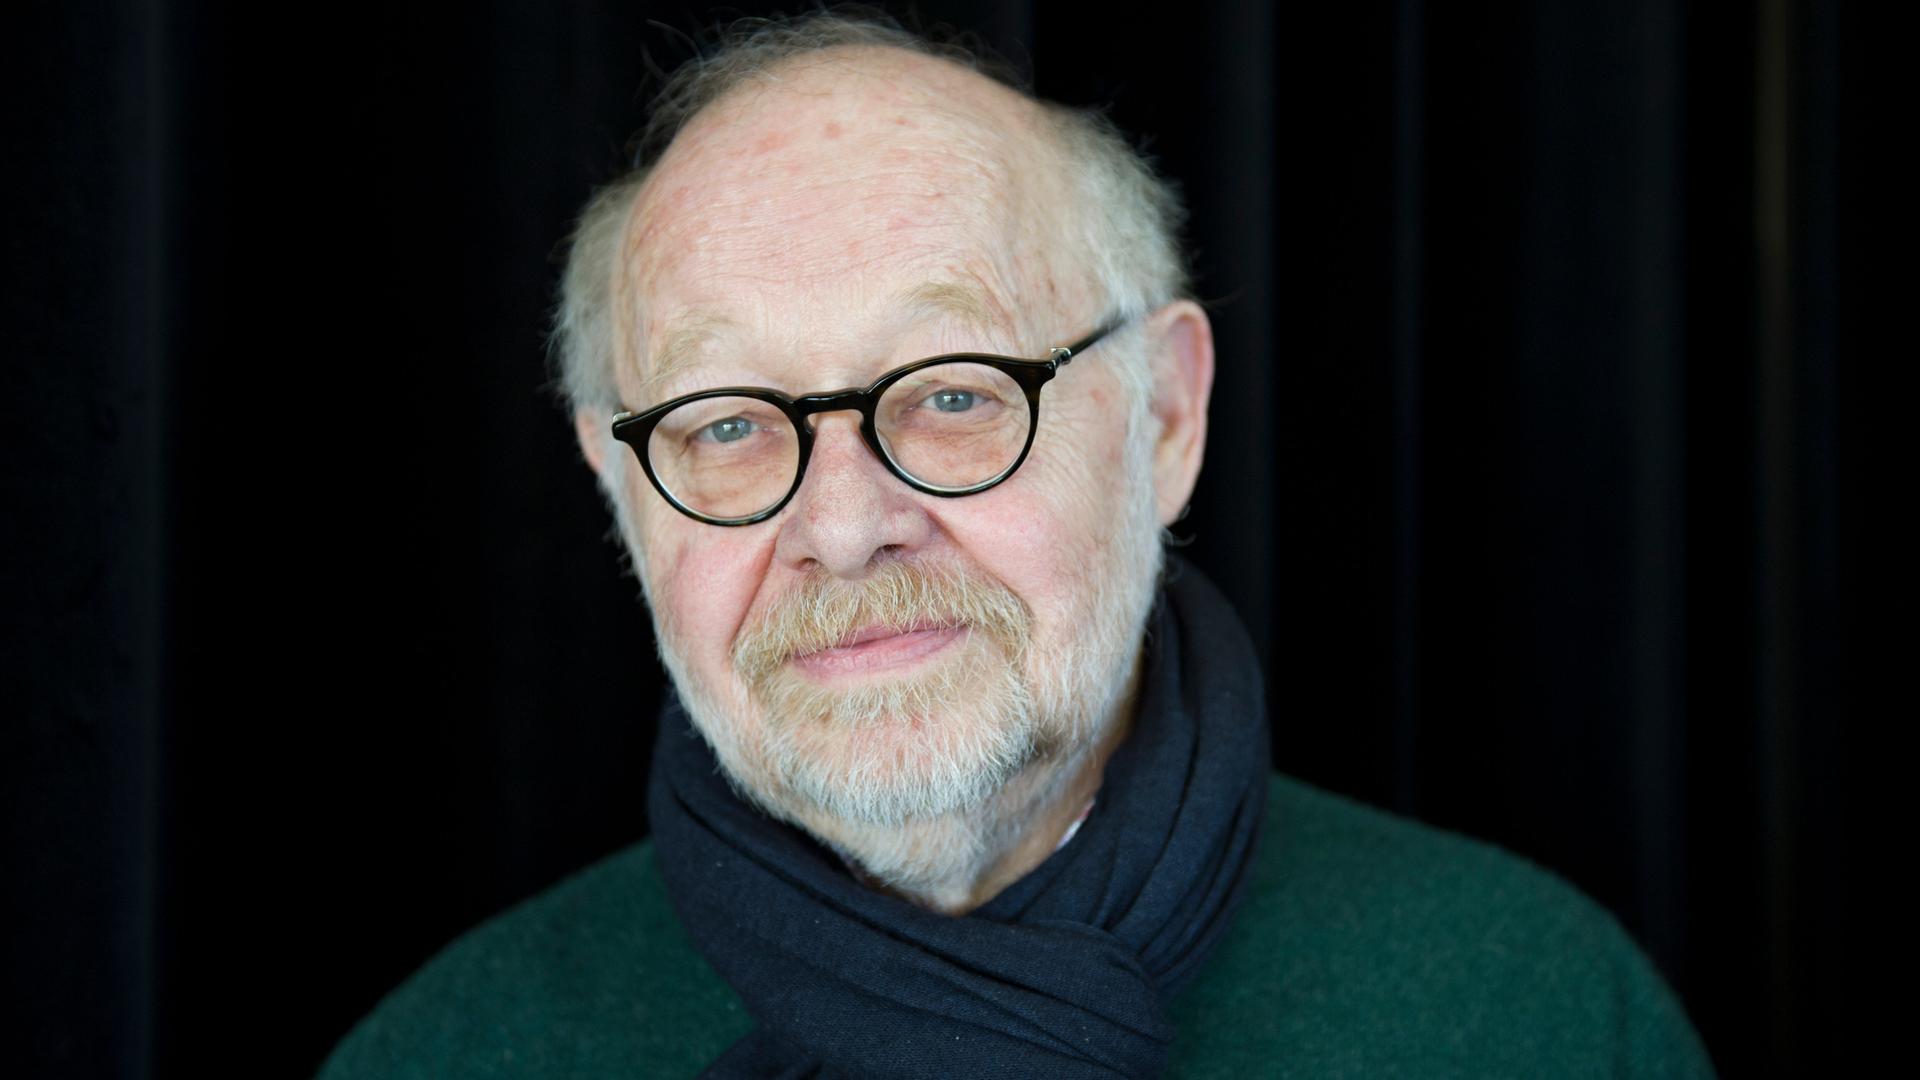 Der Regisseur Jürgen Flimm, mit Brille und weißem Bart, steht vor einem dunklen Hintergrund und schaut freundlich konzentriert in die Kamera.